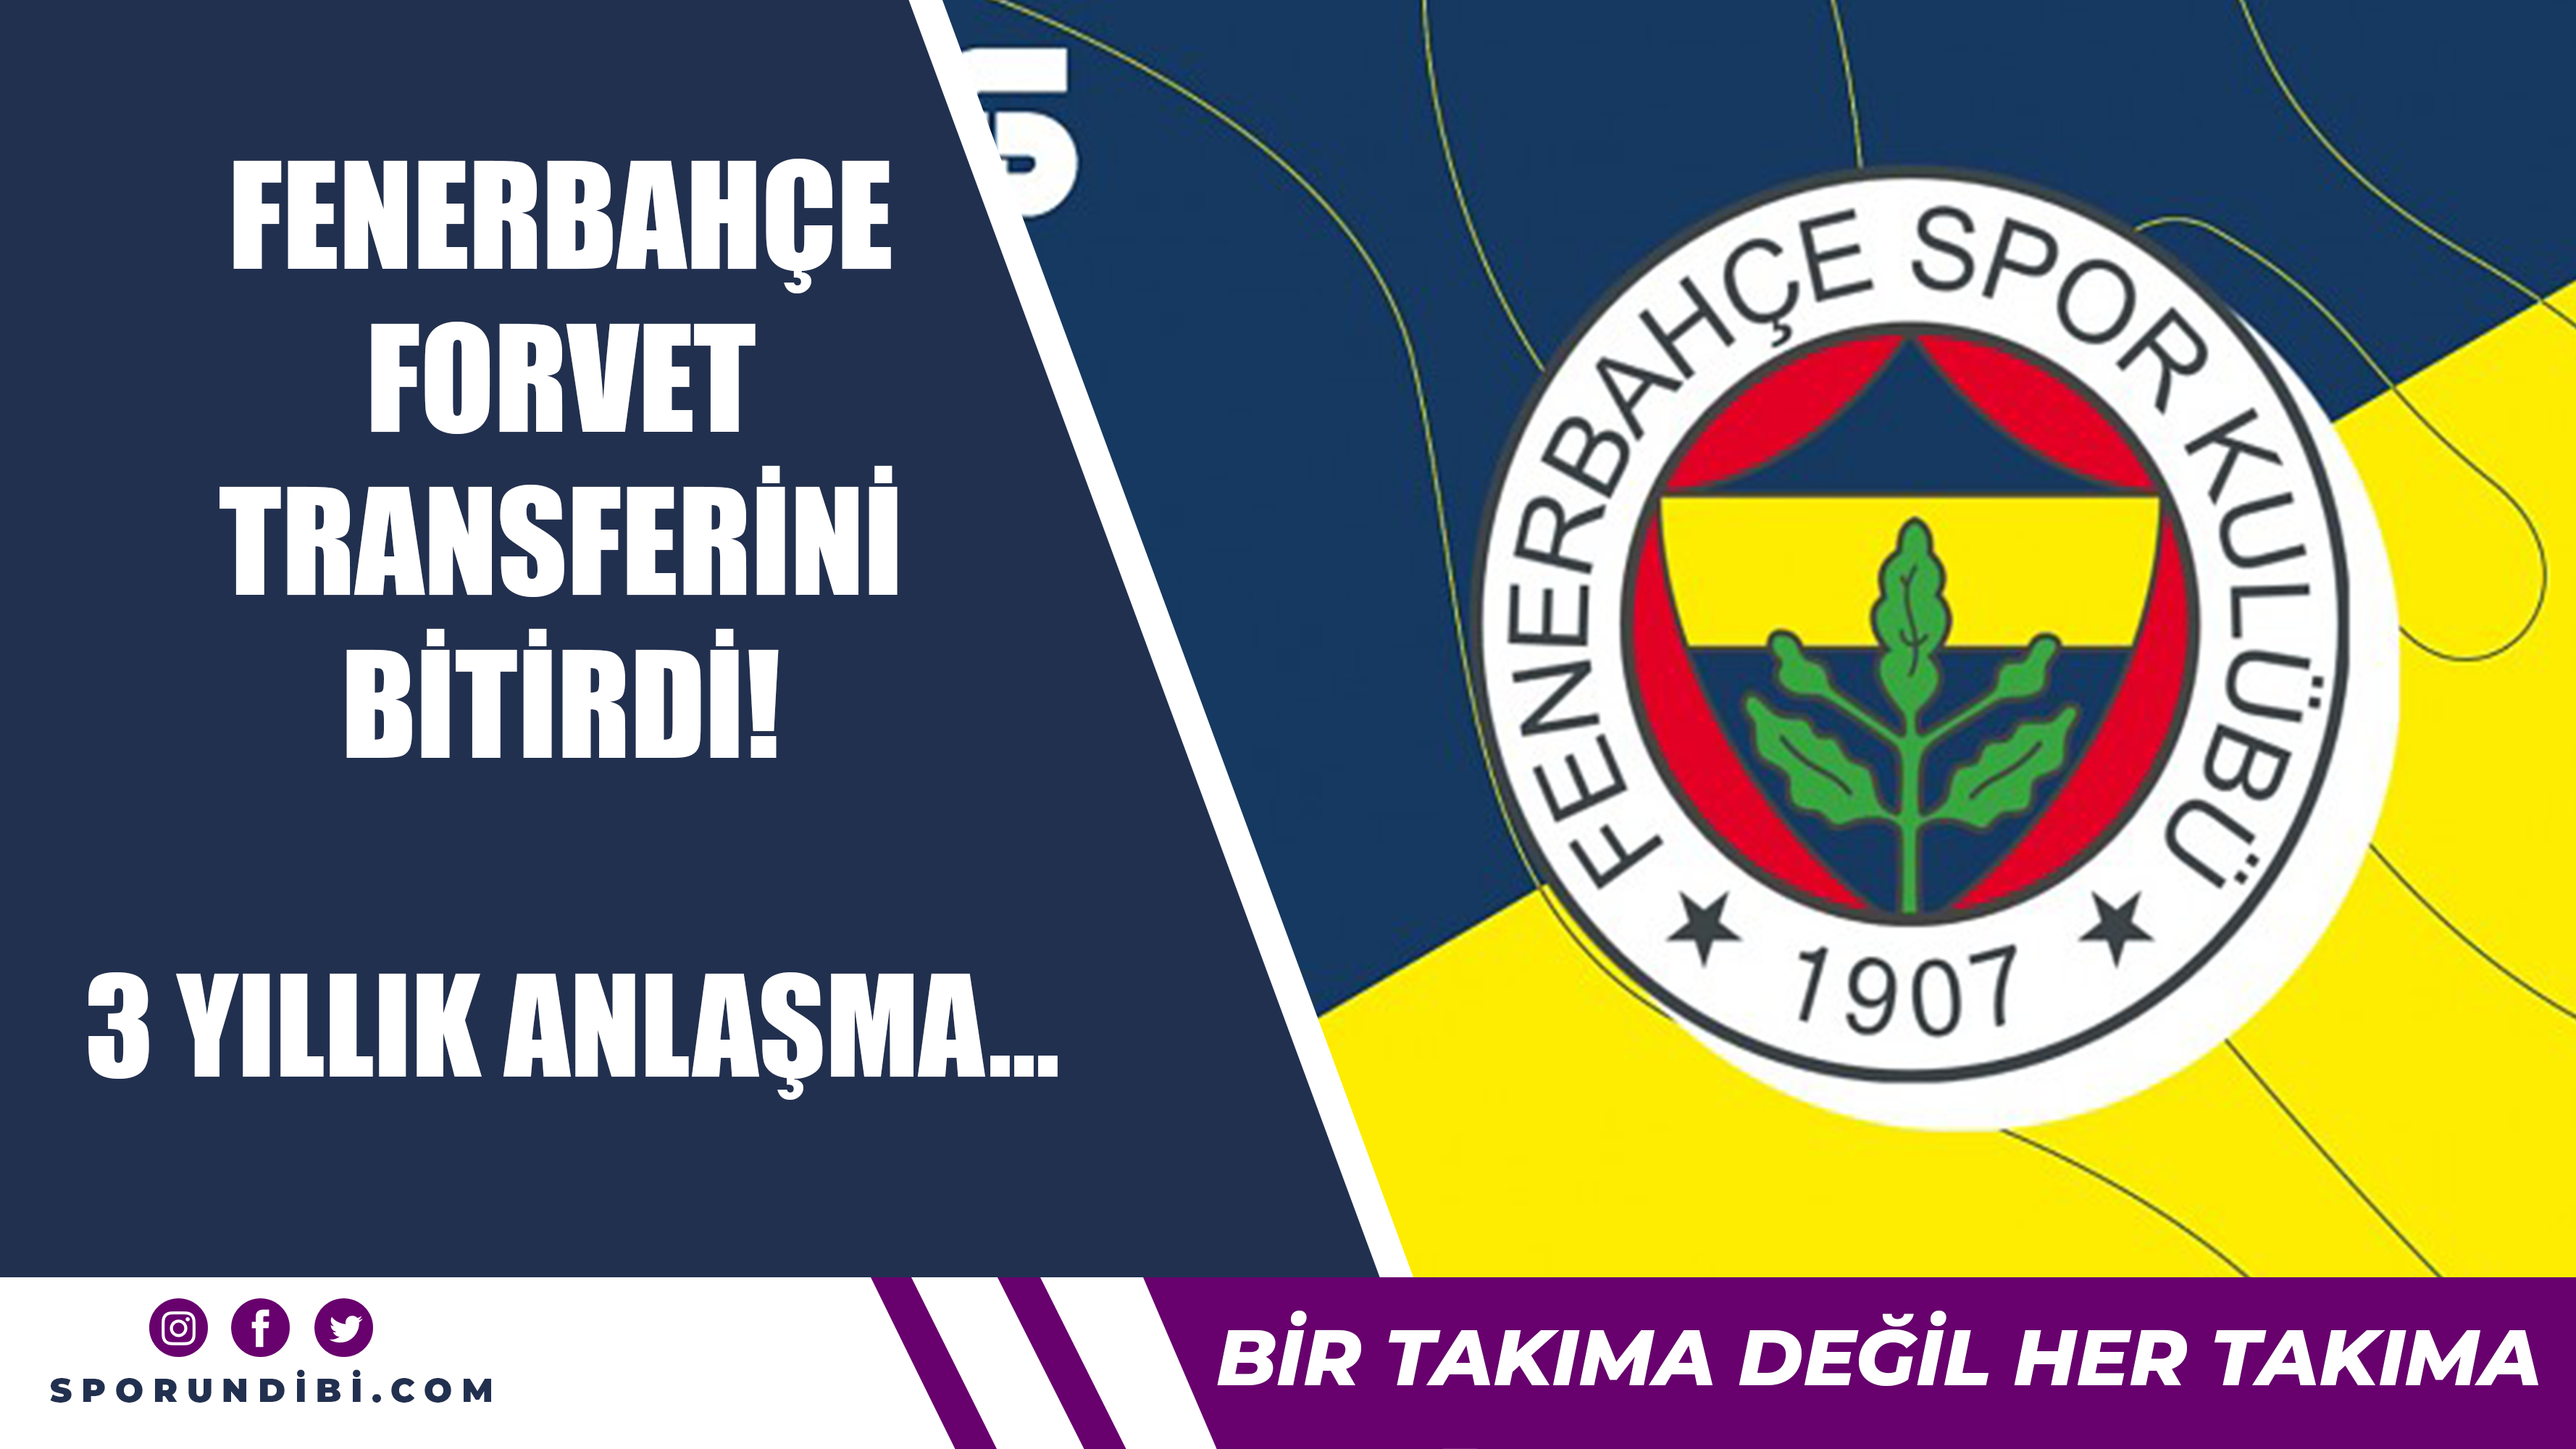 Fenerbahçe forvet transferini bitirdi! 3 yıllık anlaşma...